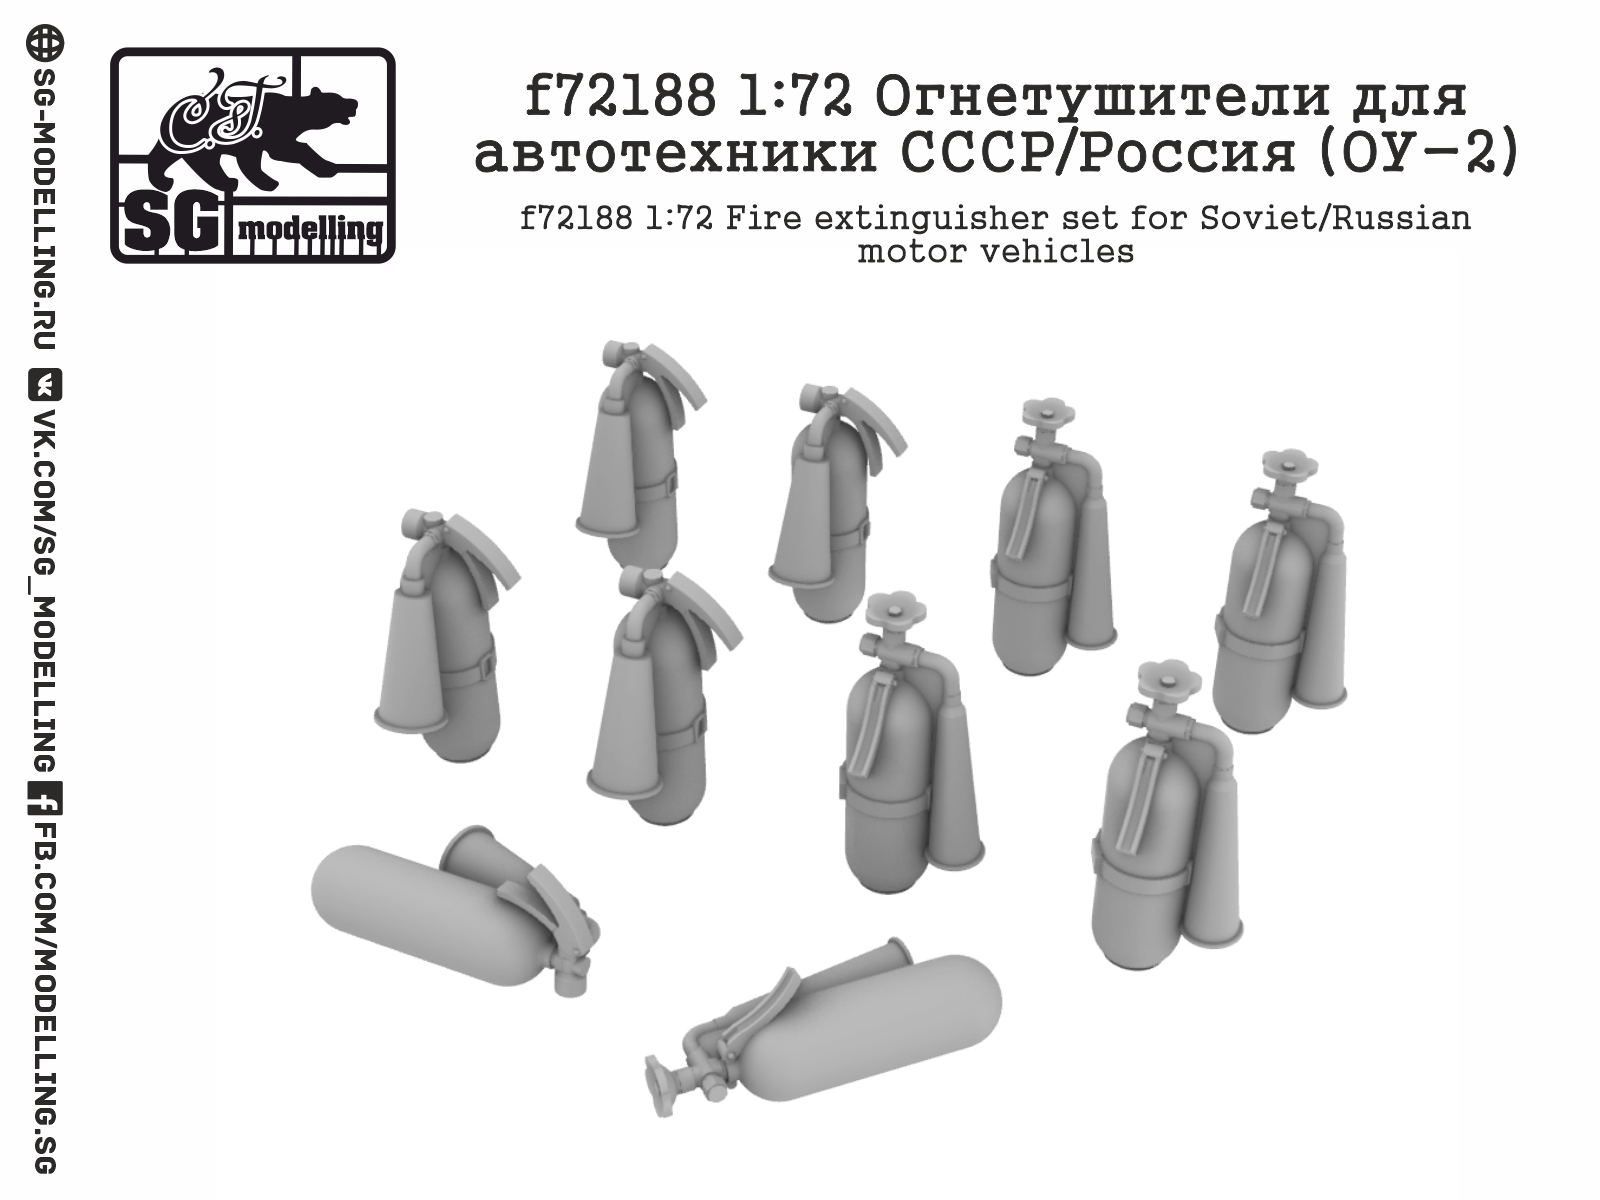 Soviet / RussianFire vehicle extinguishers